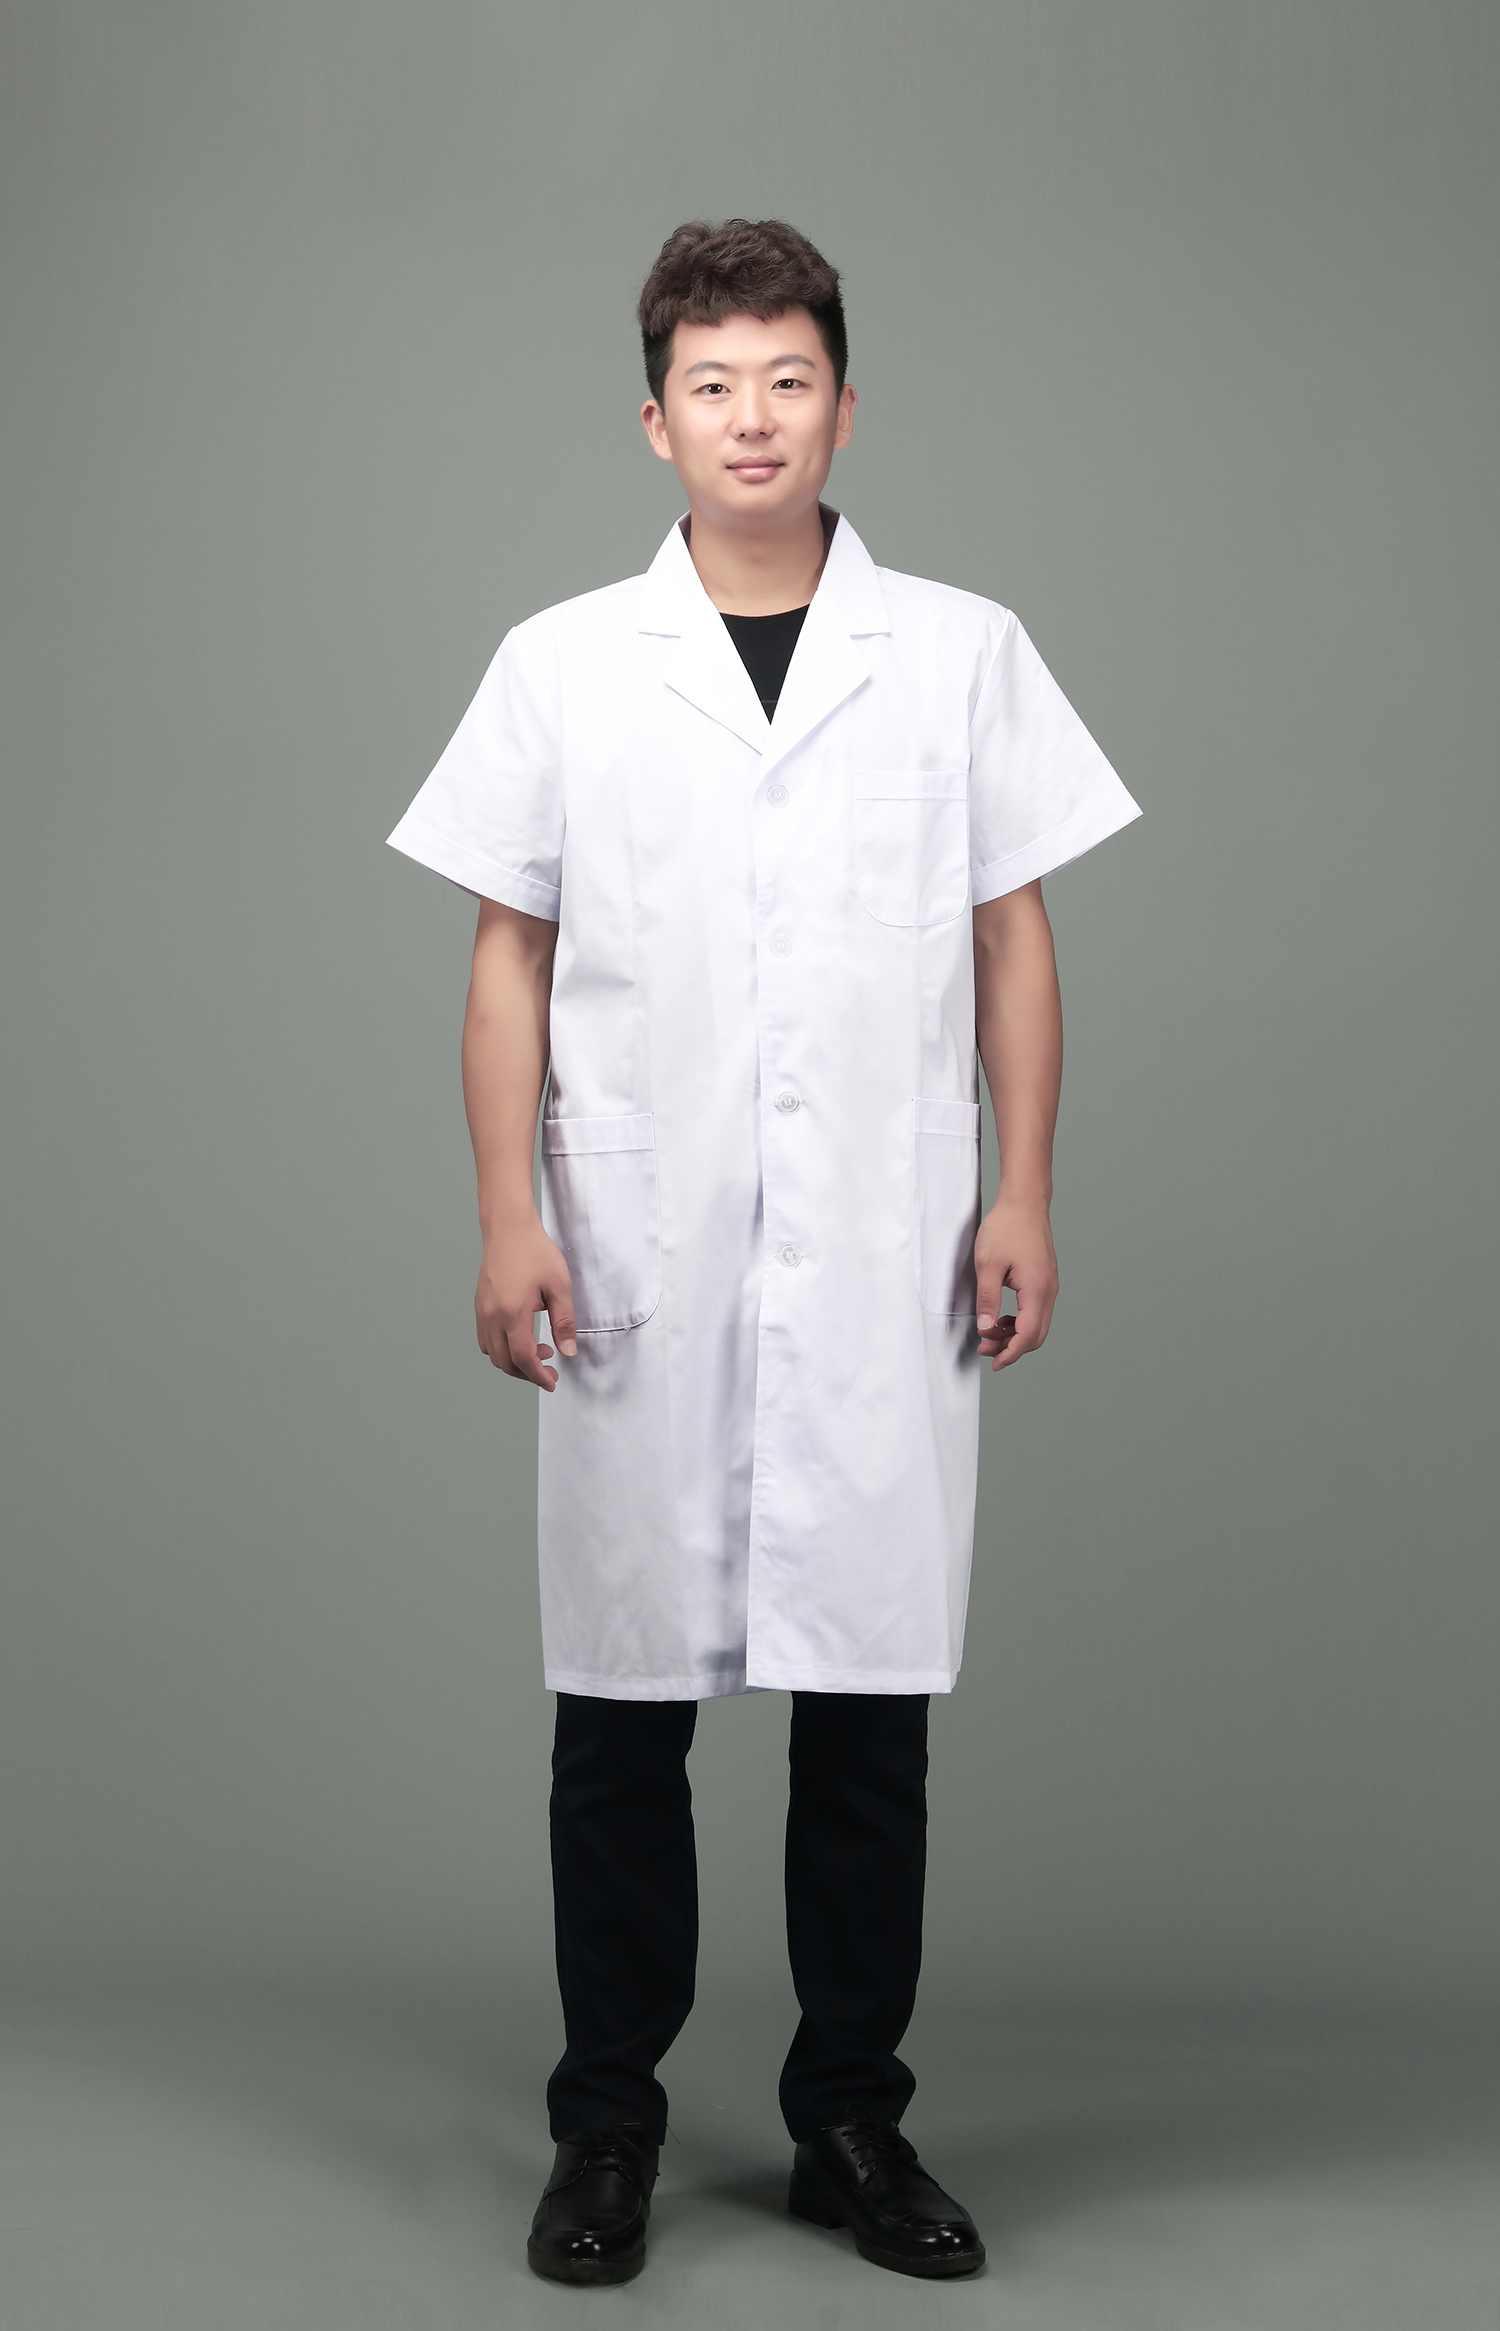 「图」白大褂短袖 白大褂长袖女白大褂短袖实验服医生短袖医用护士服图片-马可波罗网